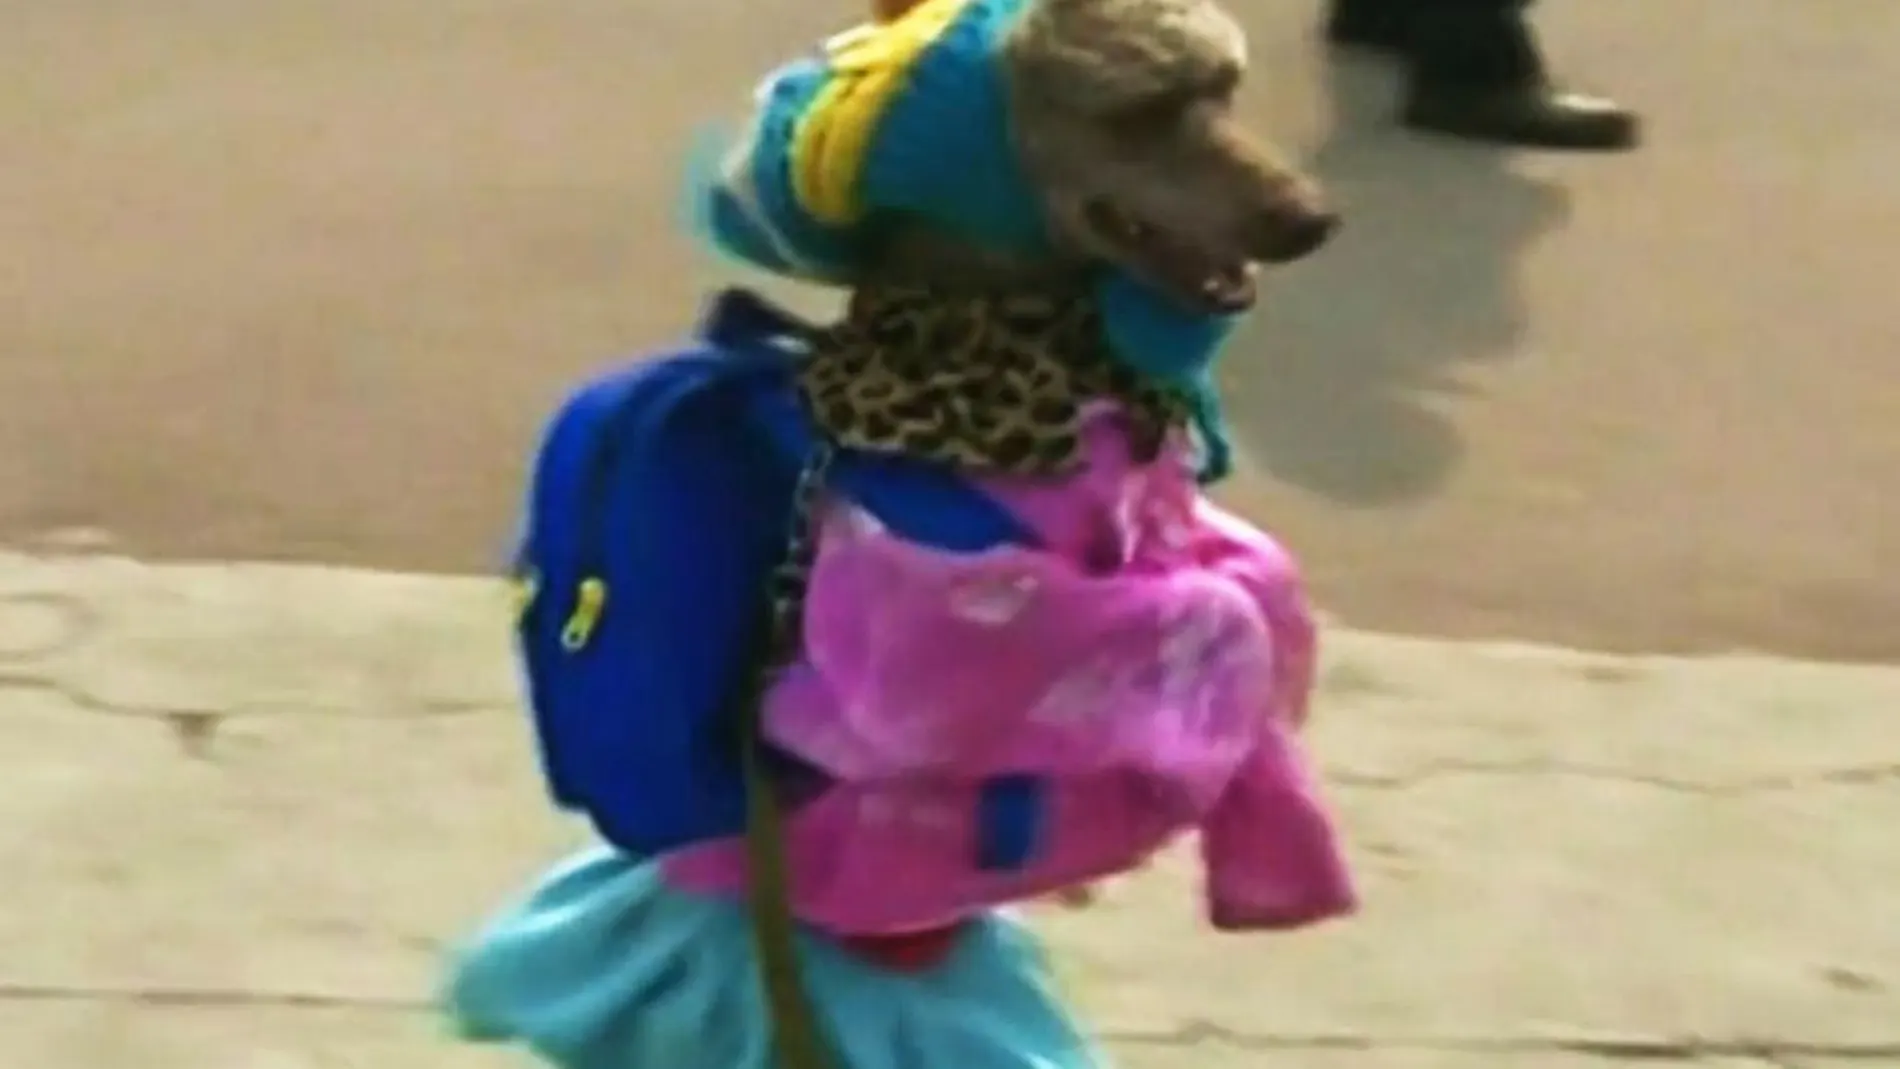 El perro, ataviado con ropa de colegiala, mochila incluida